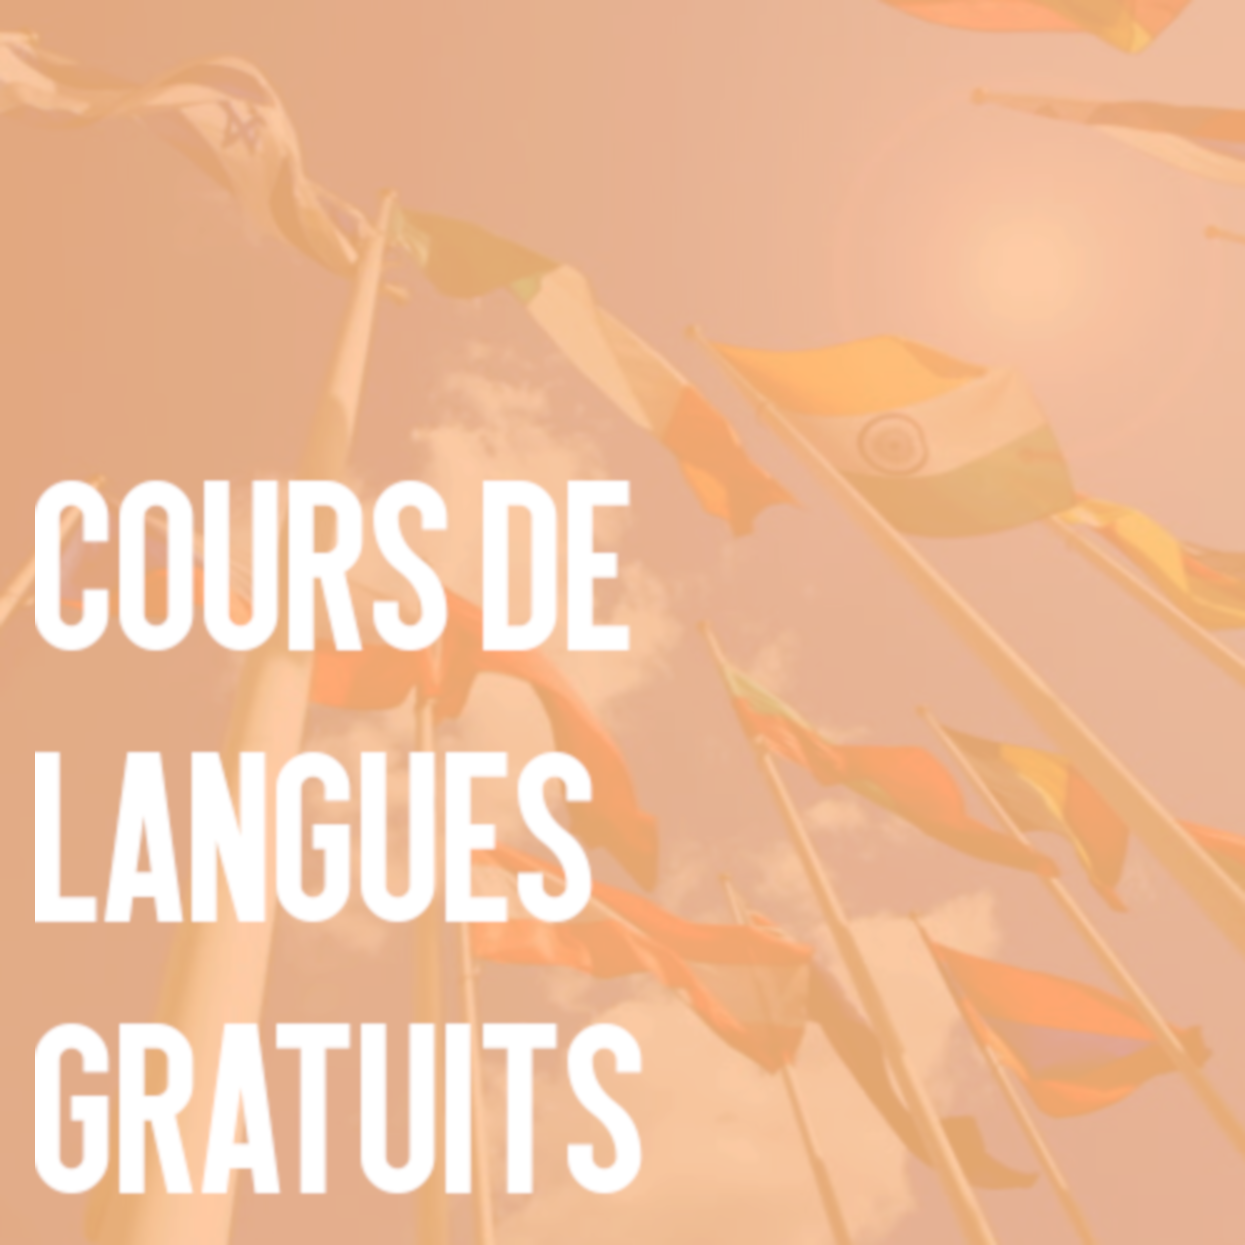 couors de langues gratuits1.png